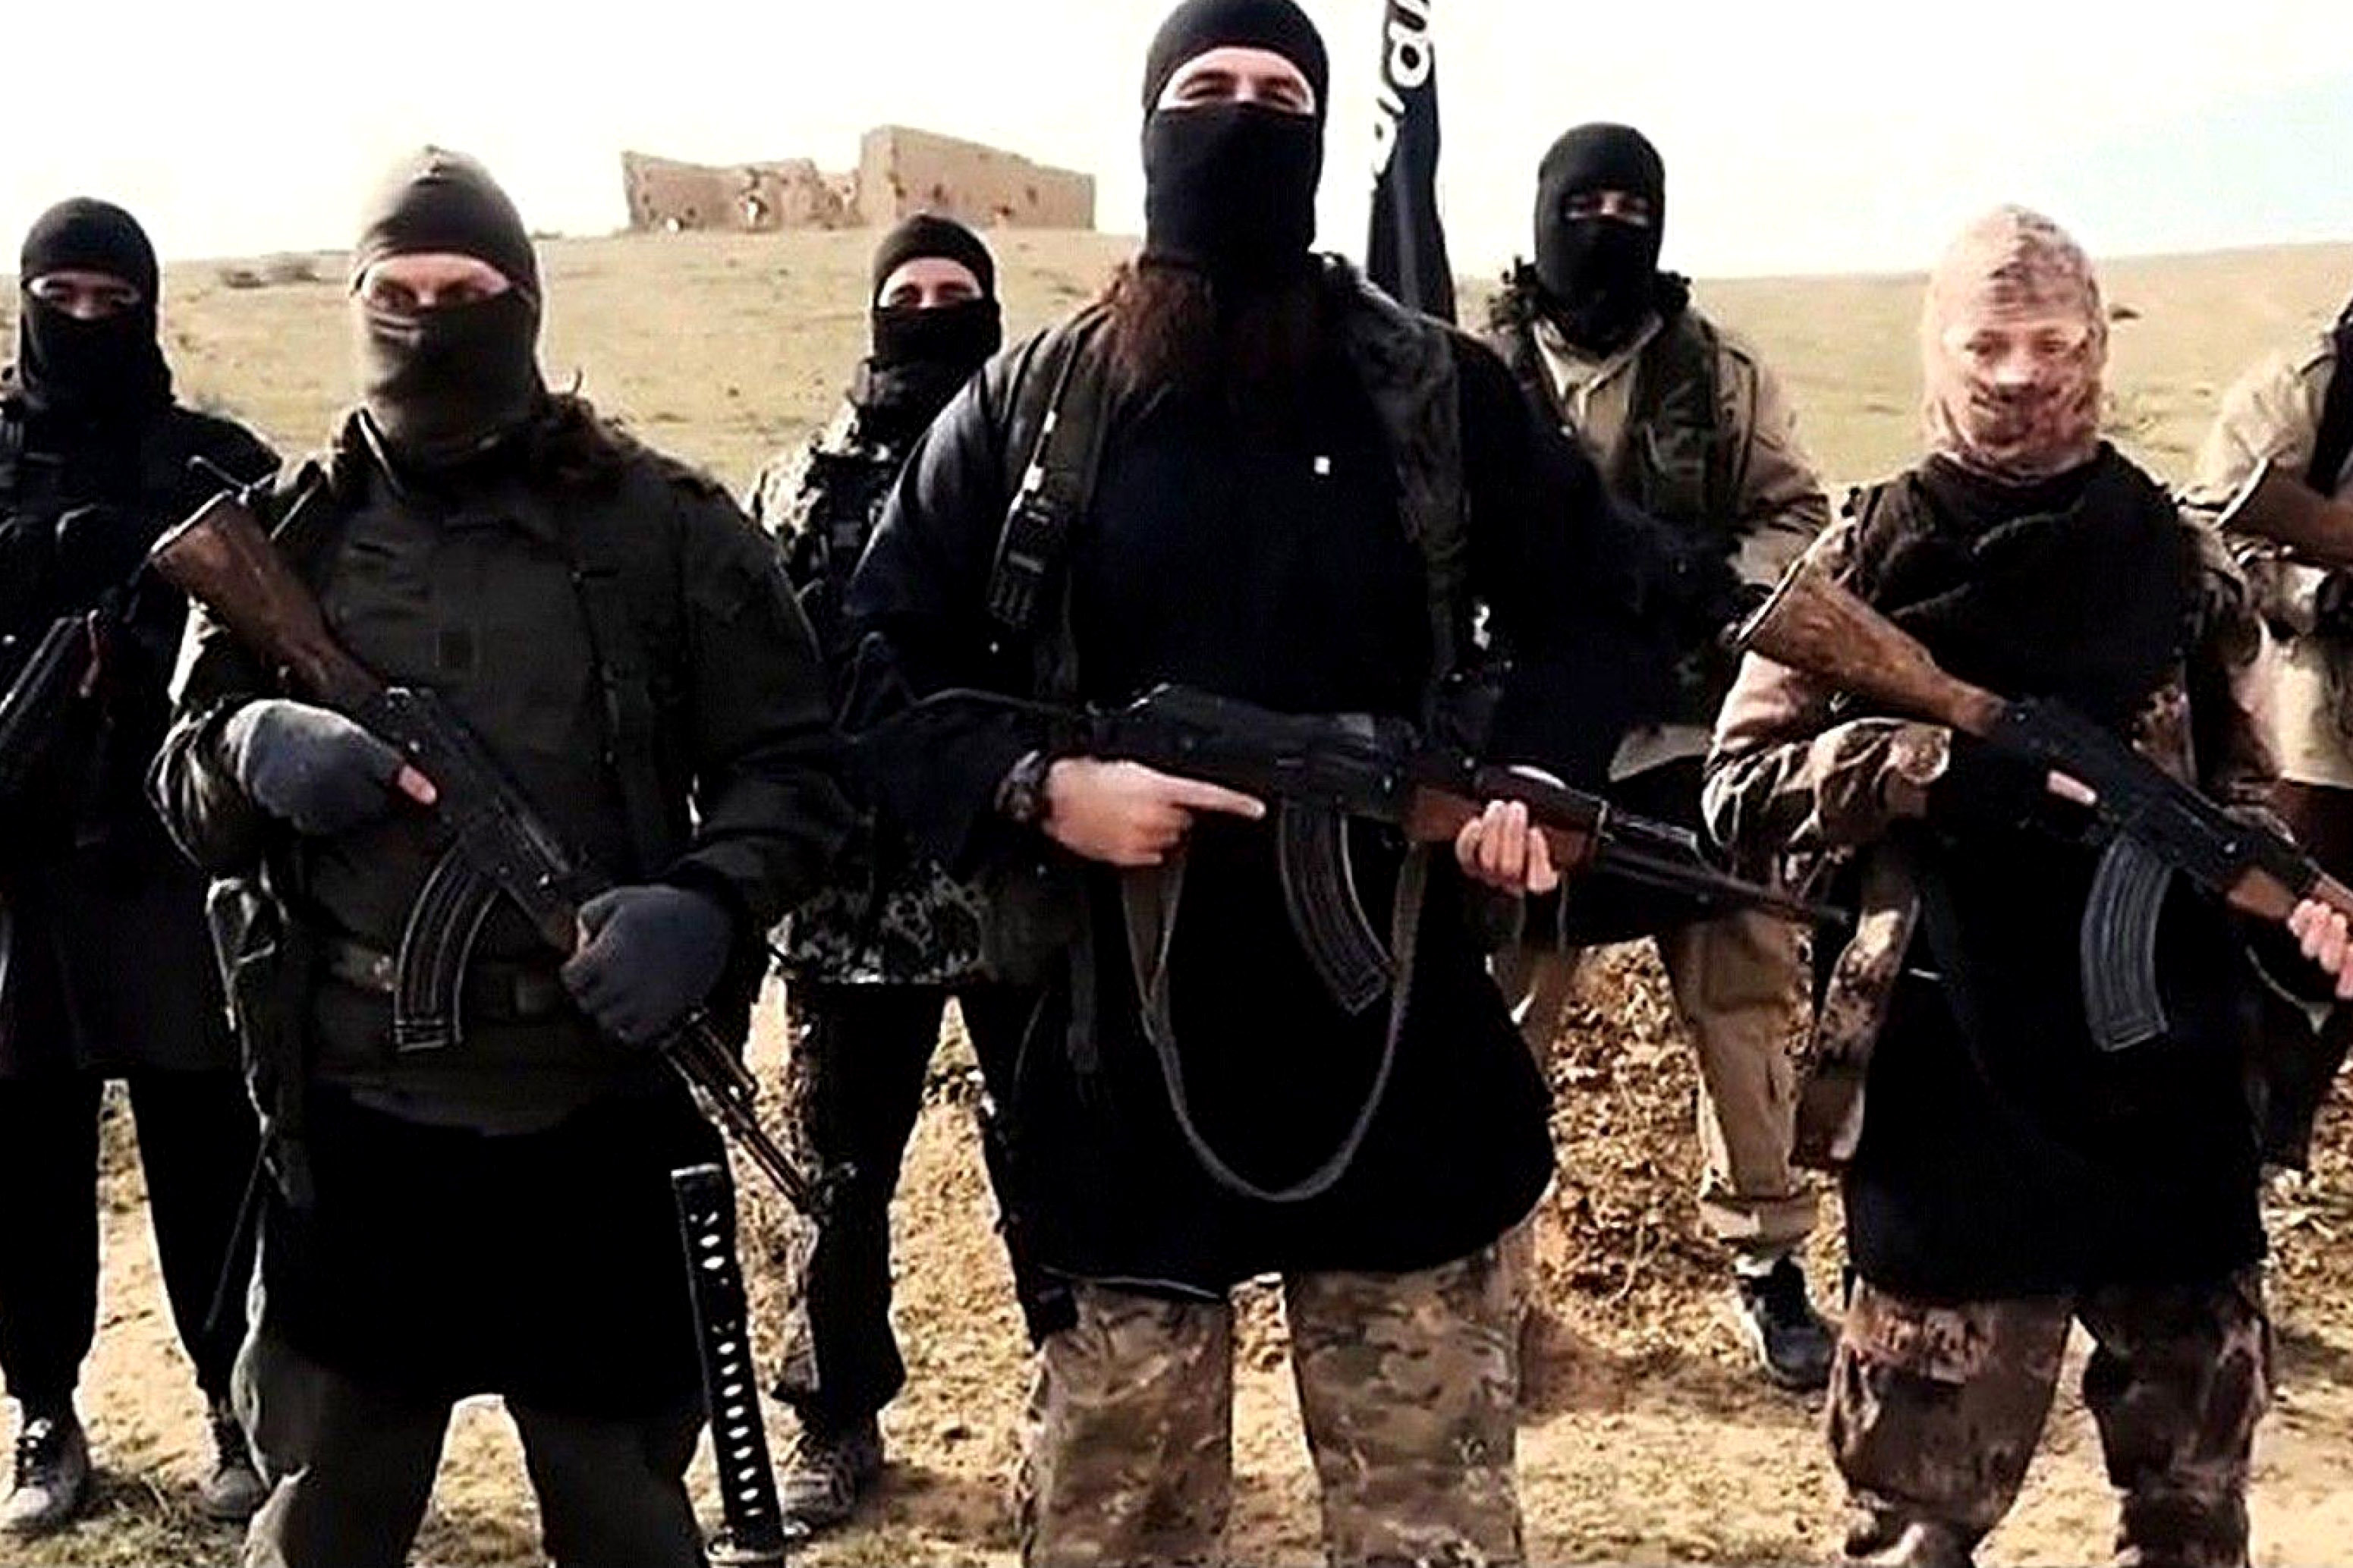 Listă uriaşă de aşteptare la ISIS pentru misiuni sinucigaşe. Teroriştii îşi acuză liderii de ”nepotism”, şi că îşi ”bagă în faţă” rudele pentru atentate